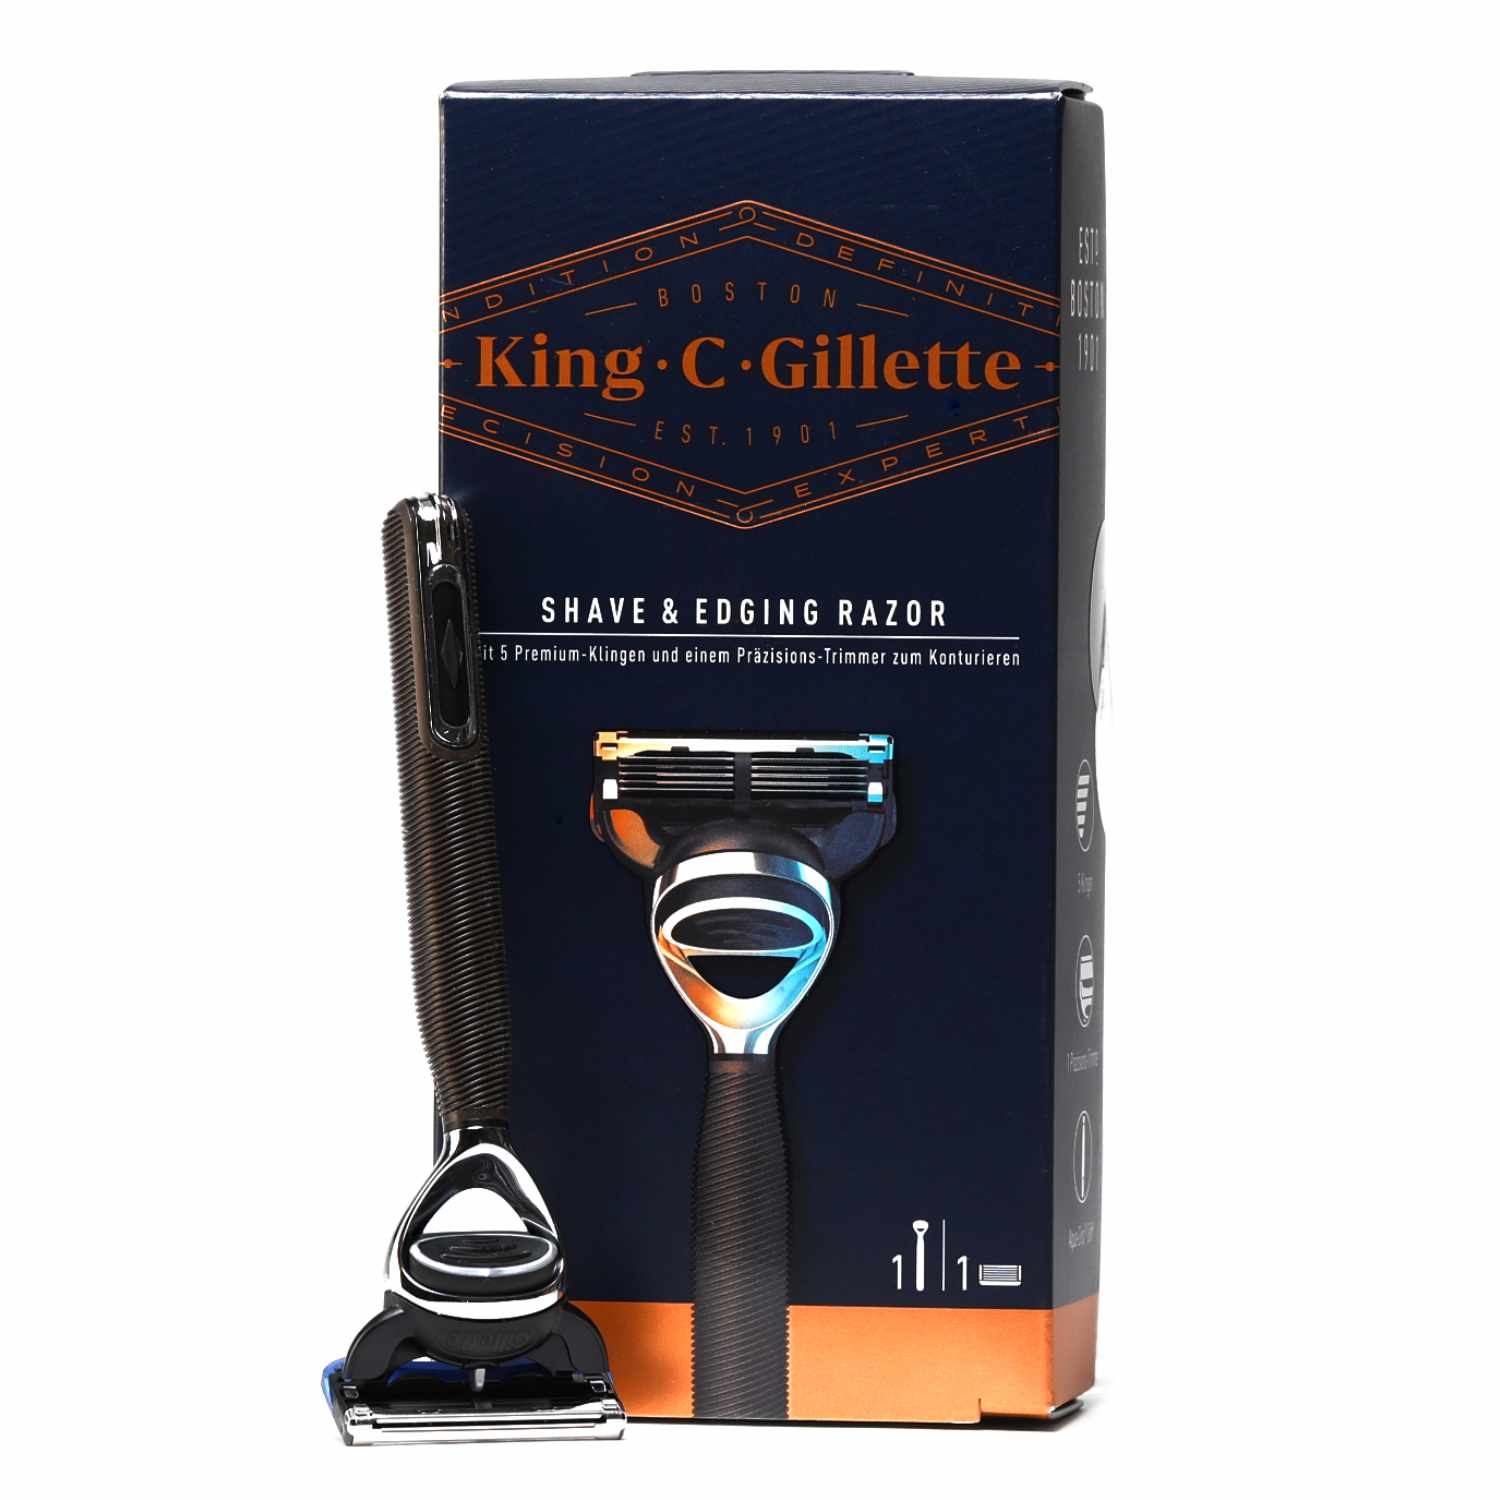 Premium Bartpflege Set von King C. Gillette